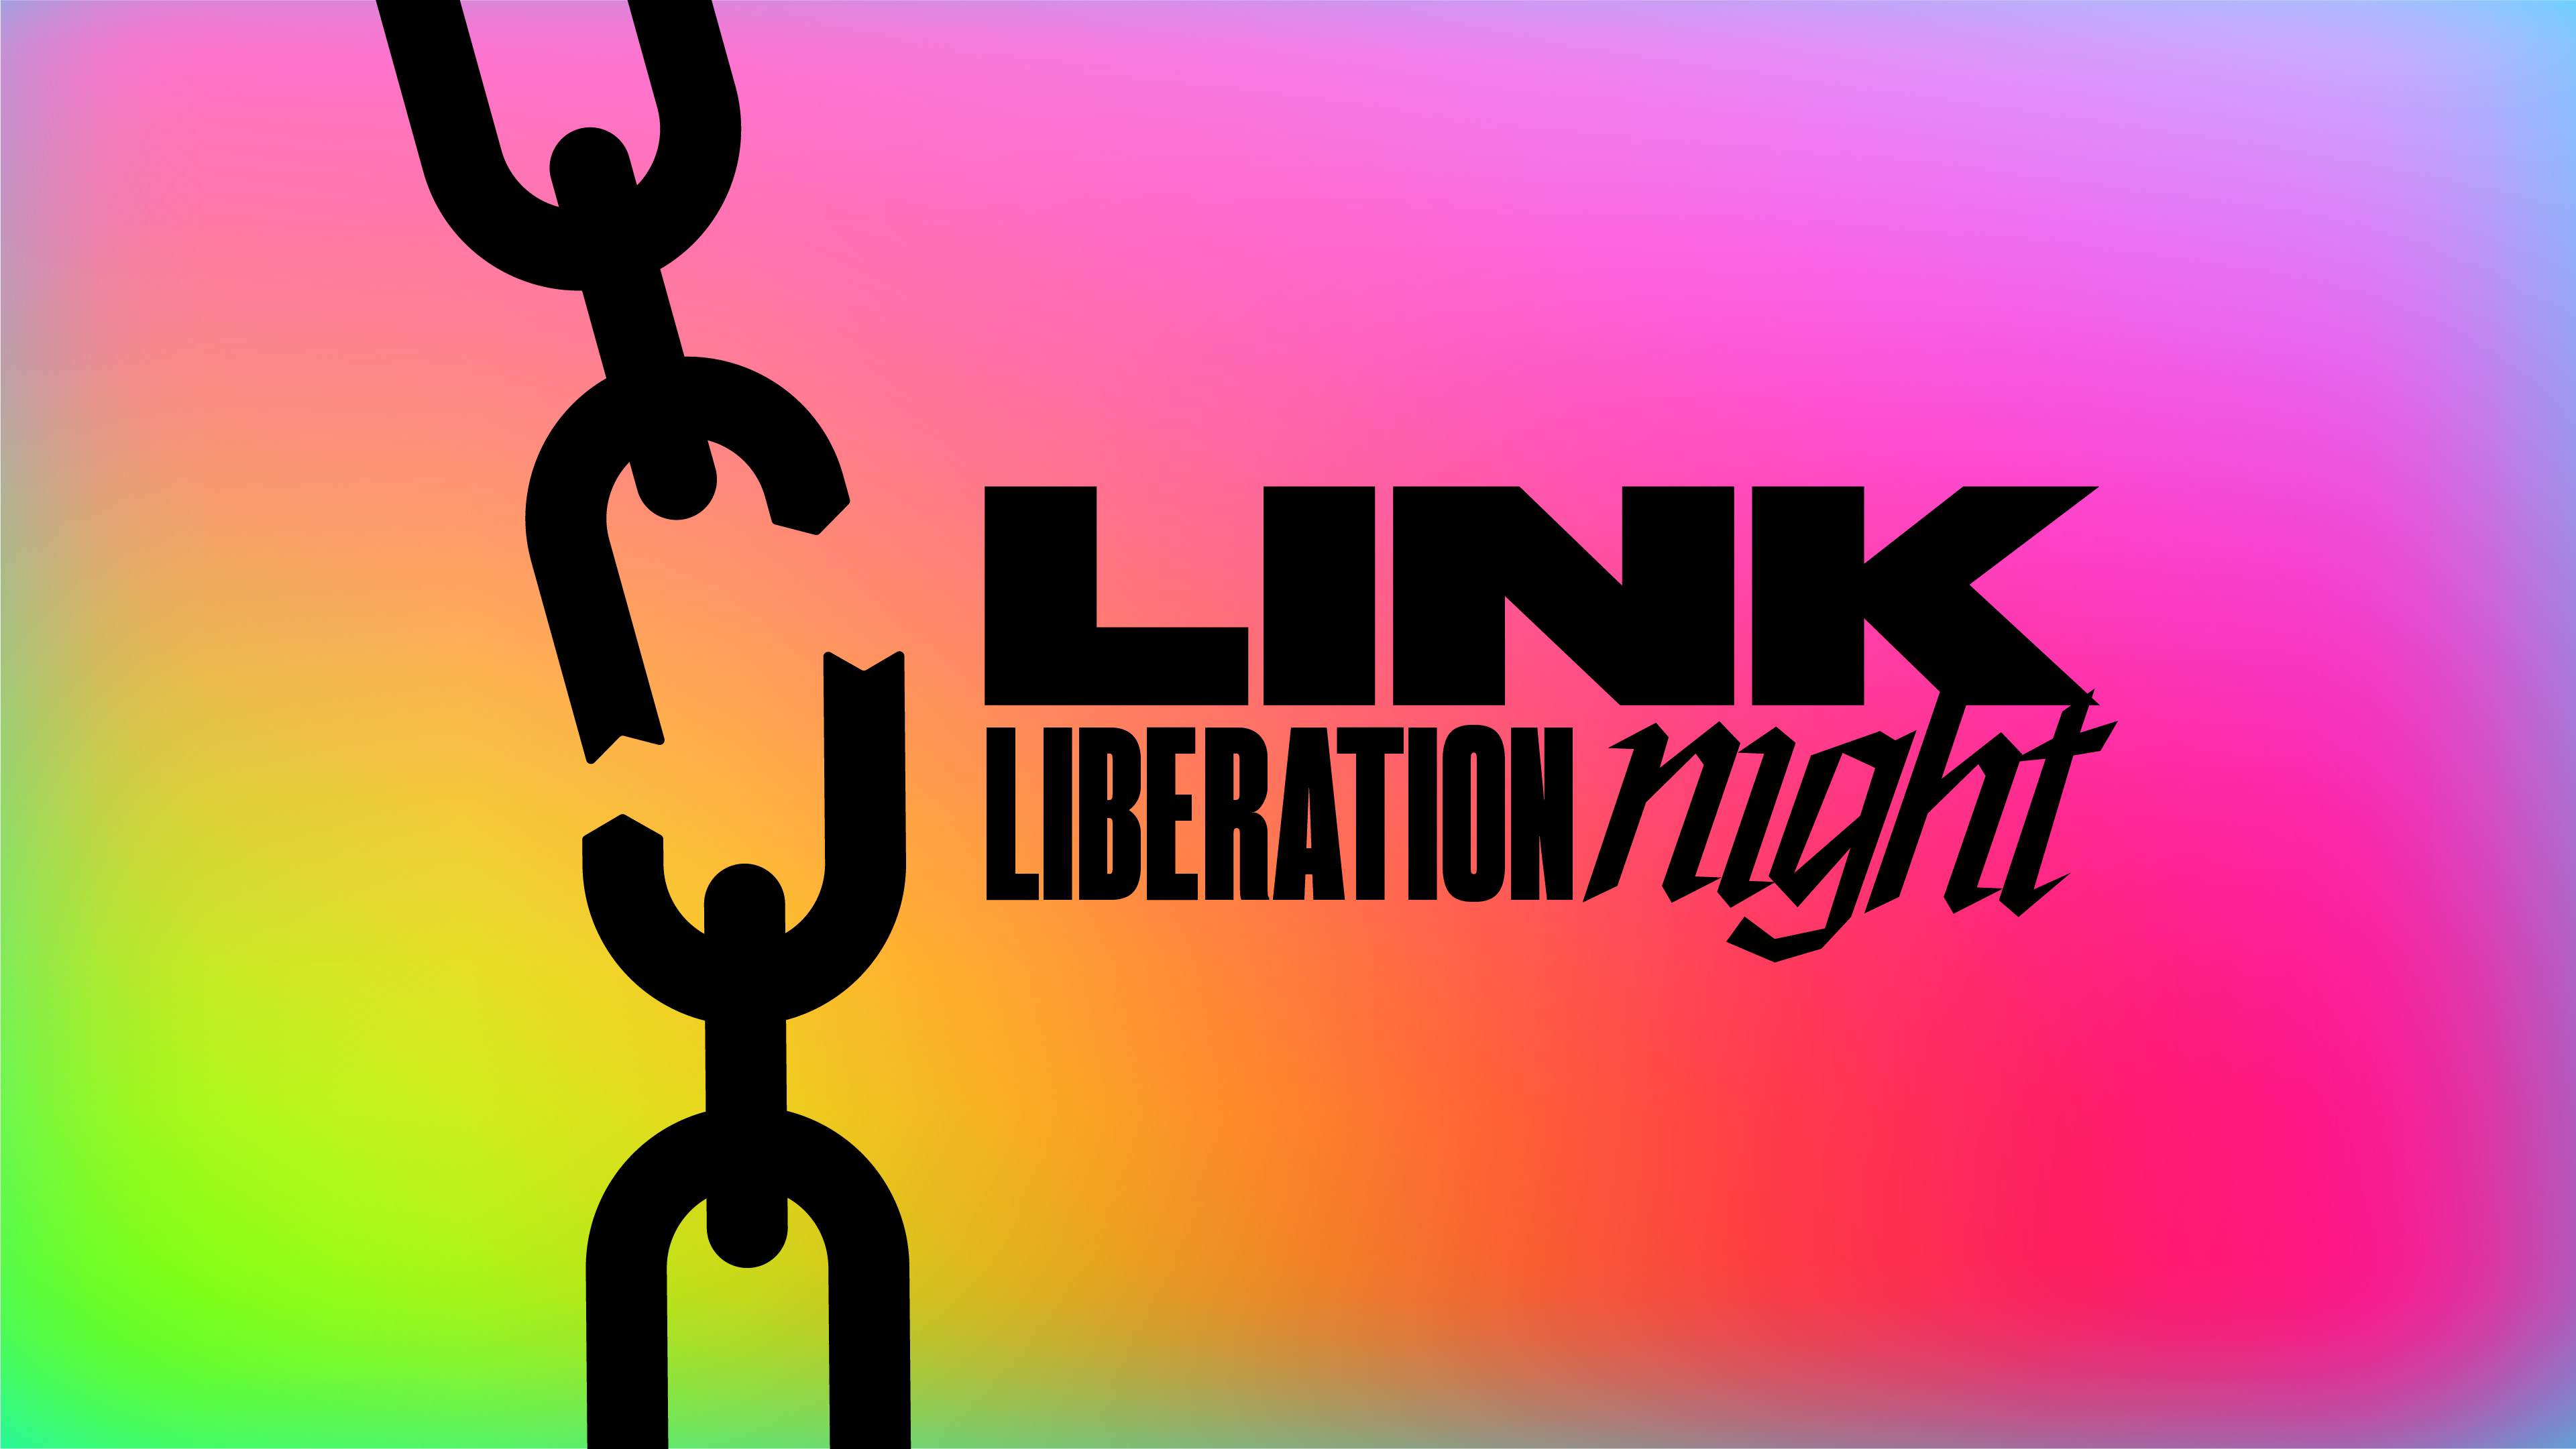 Link Liberation Night | Free Entry till 23:59 - Página frontal